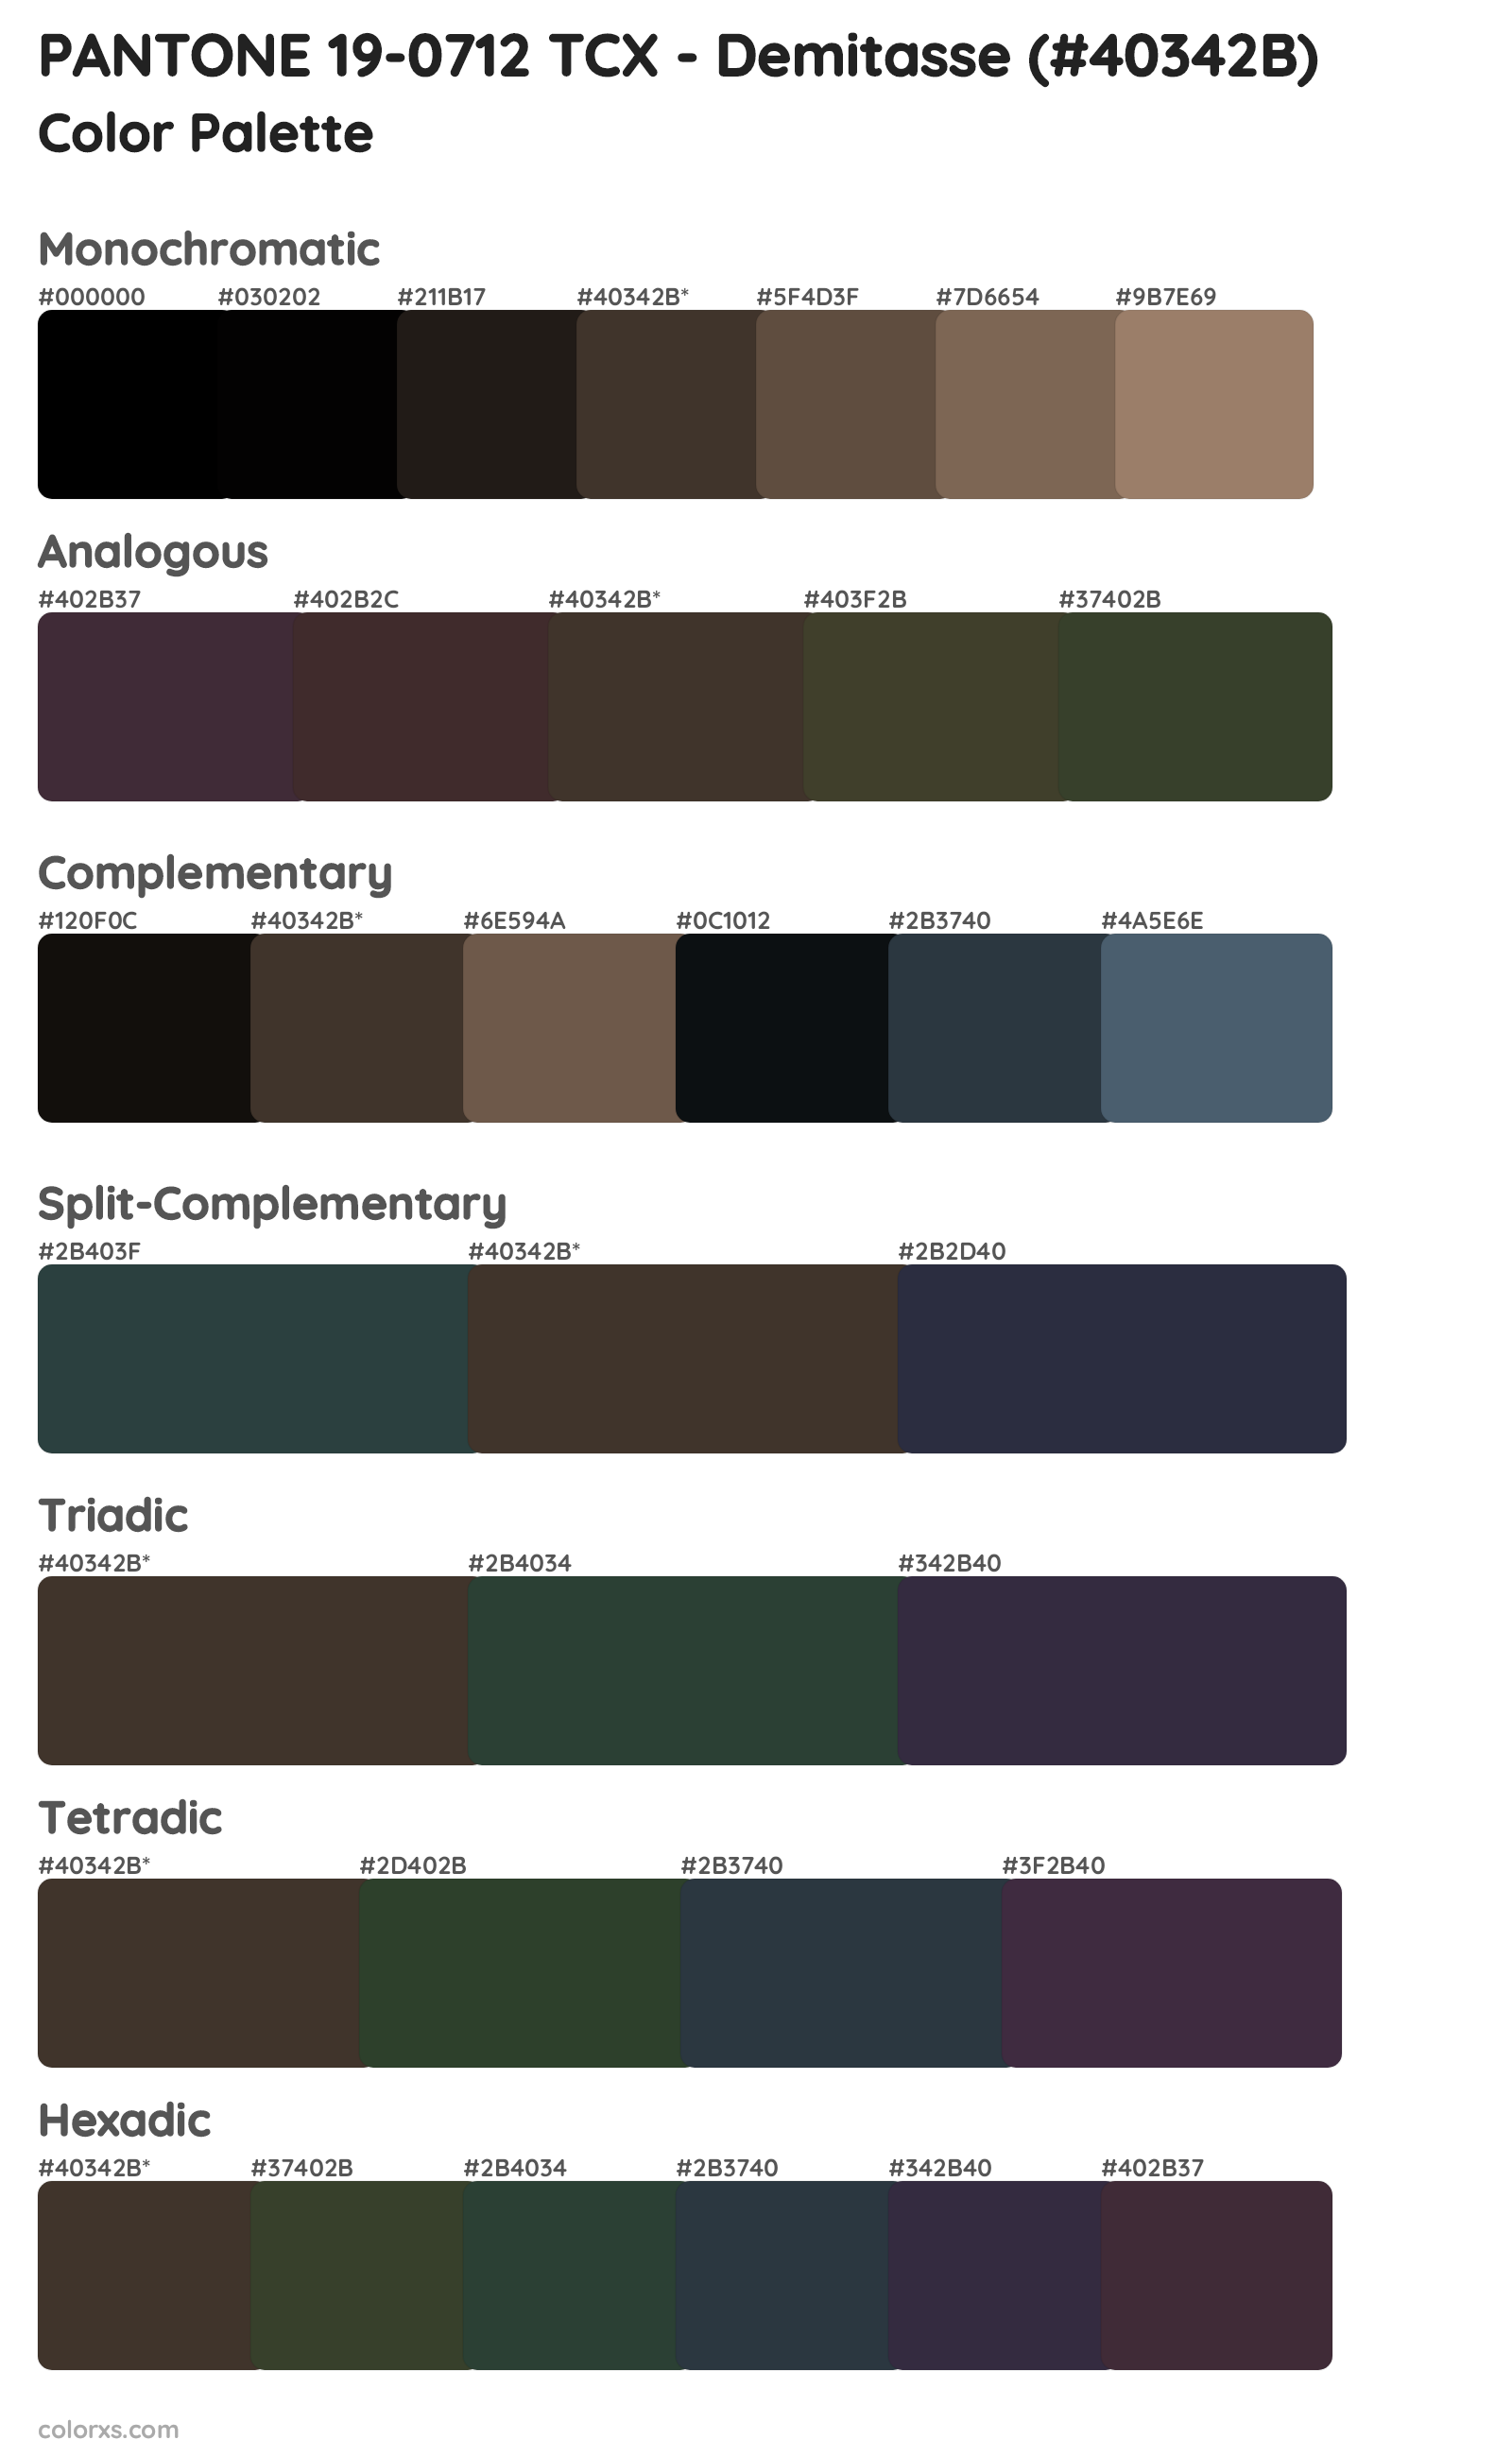 PANTONE 19-0712 TCX - Demitasse Color Scheme Palettes